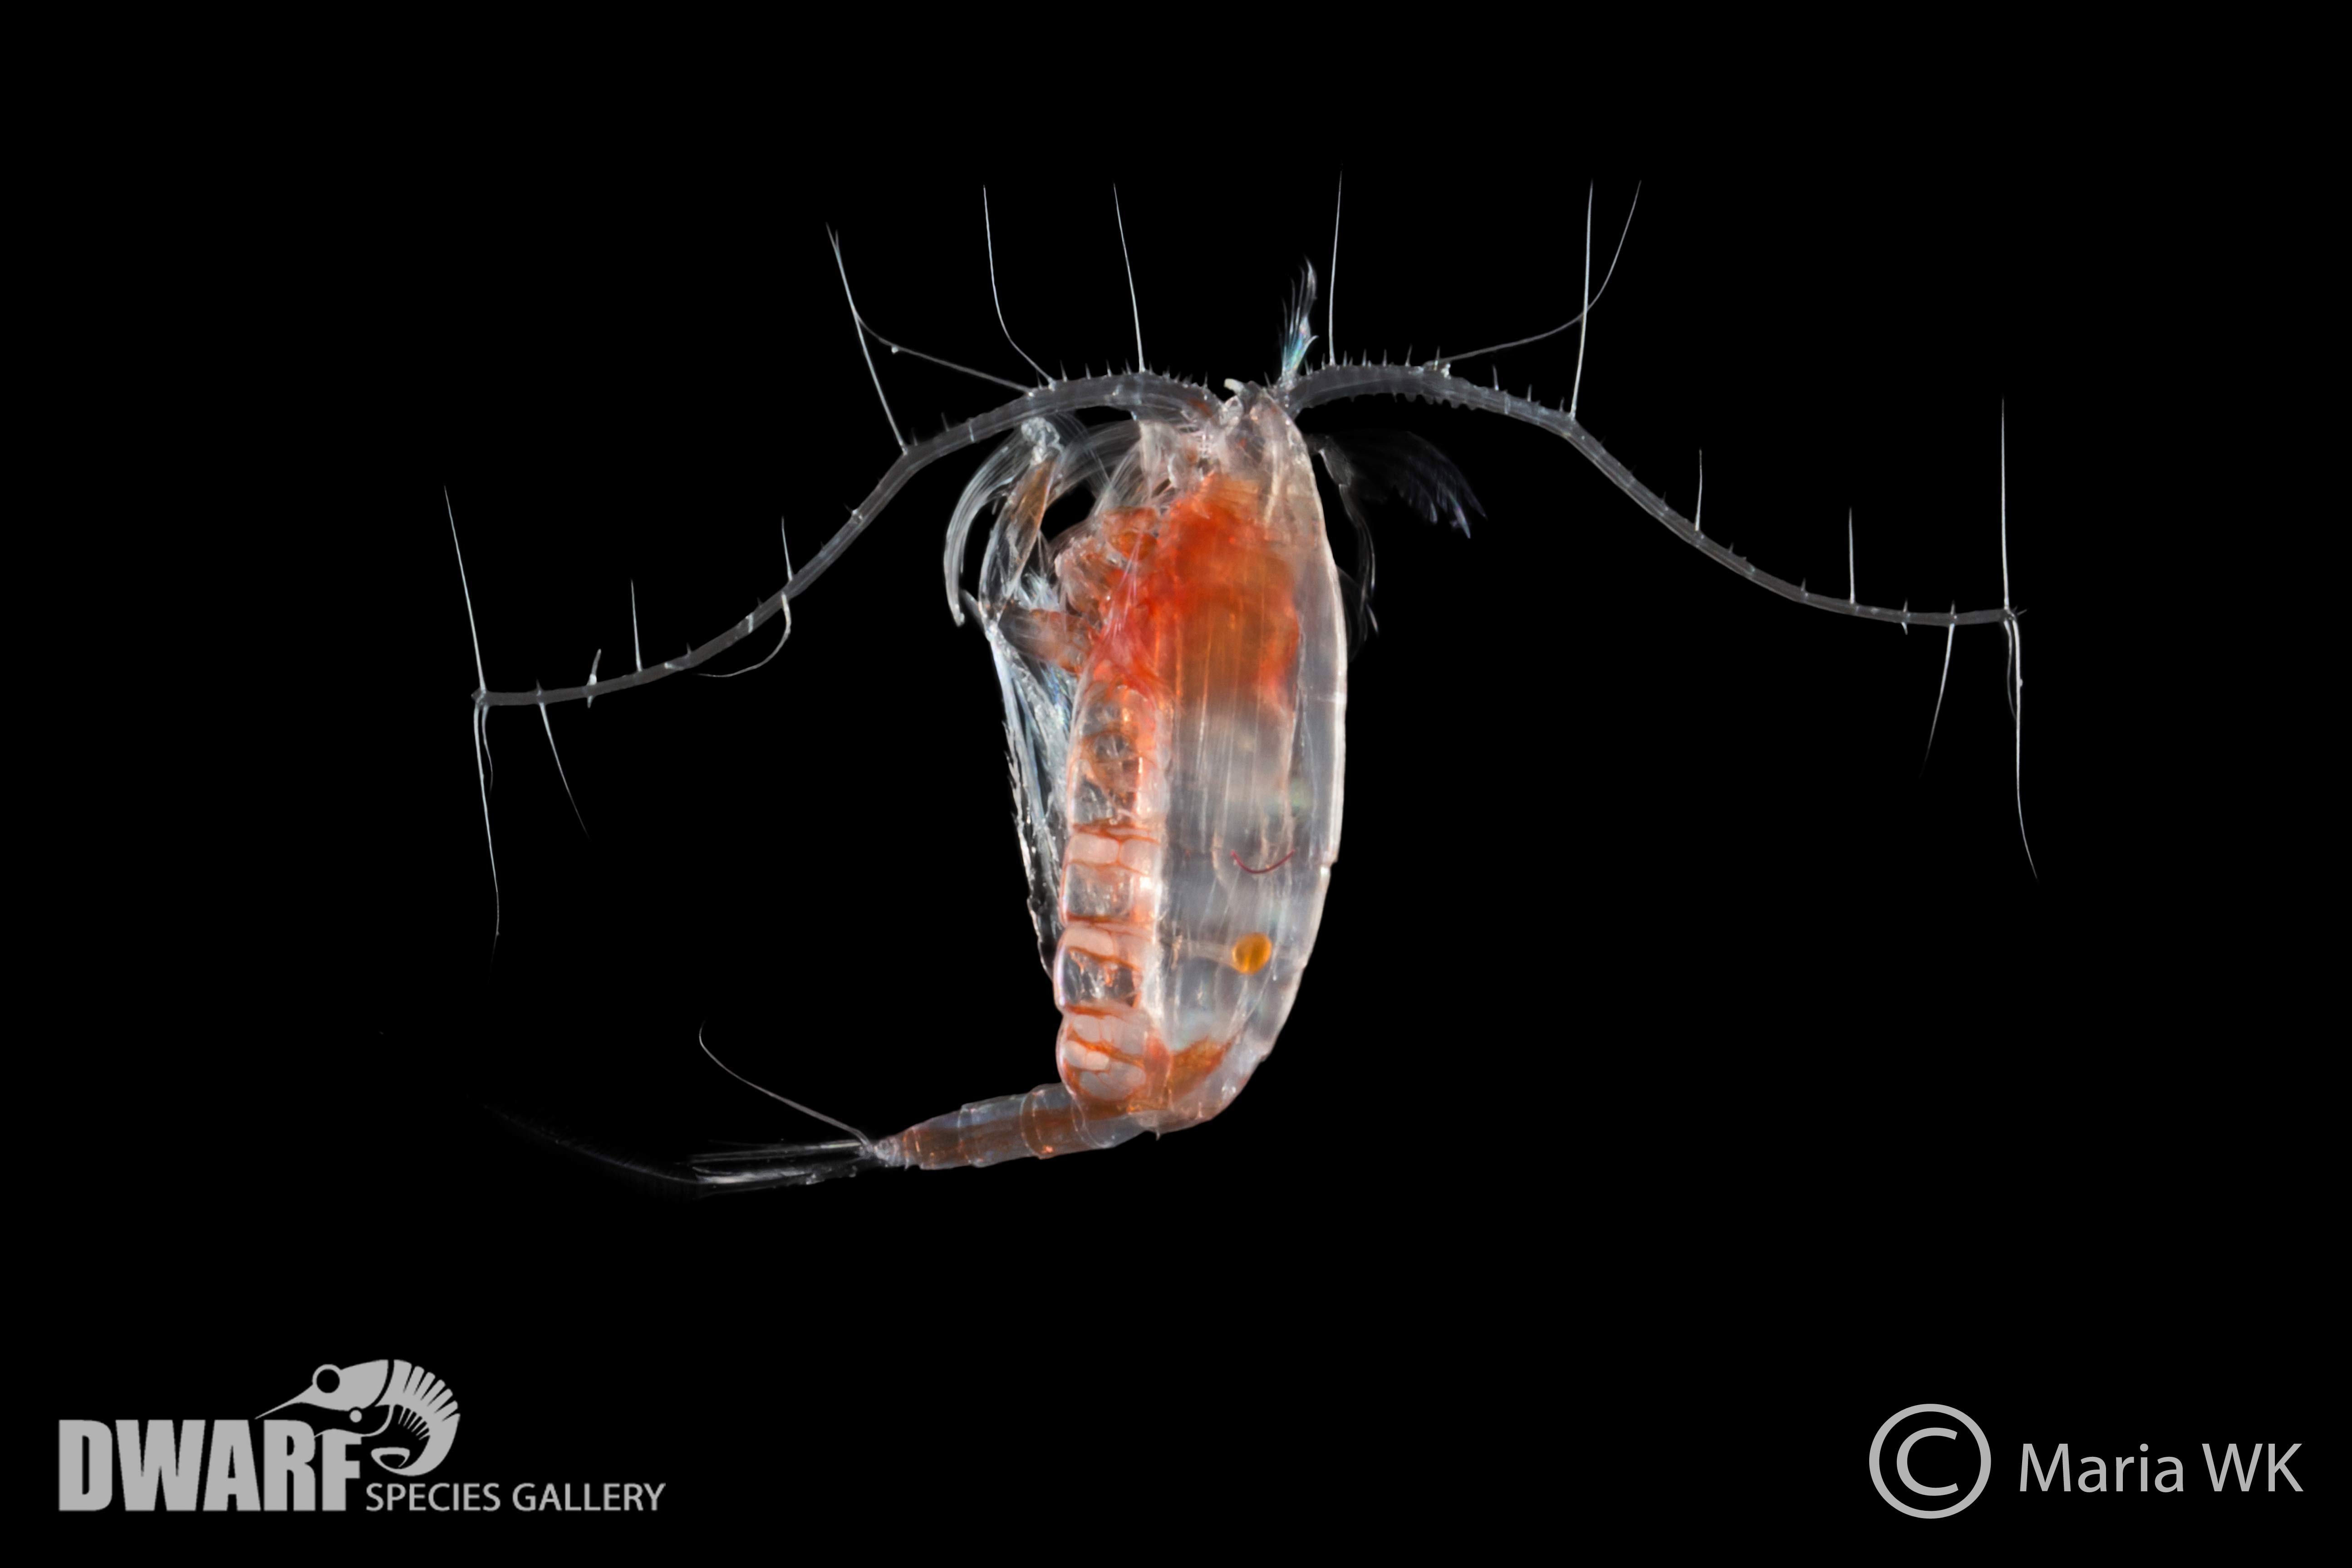 Zooplankton, crustacea, Paraeuchaeta sp. 